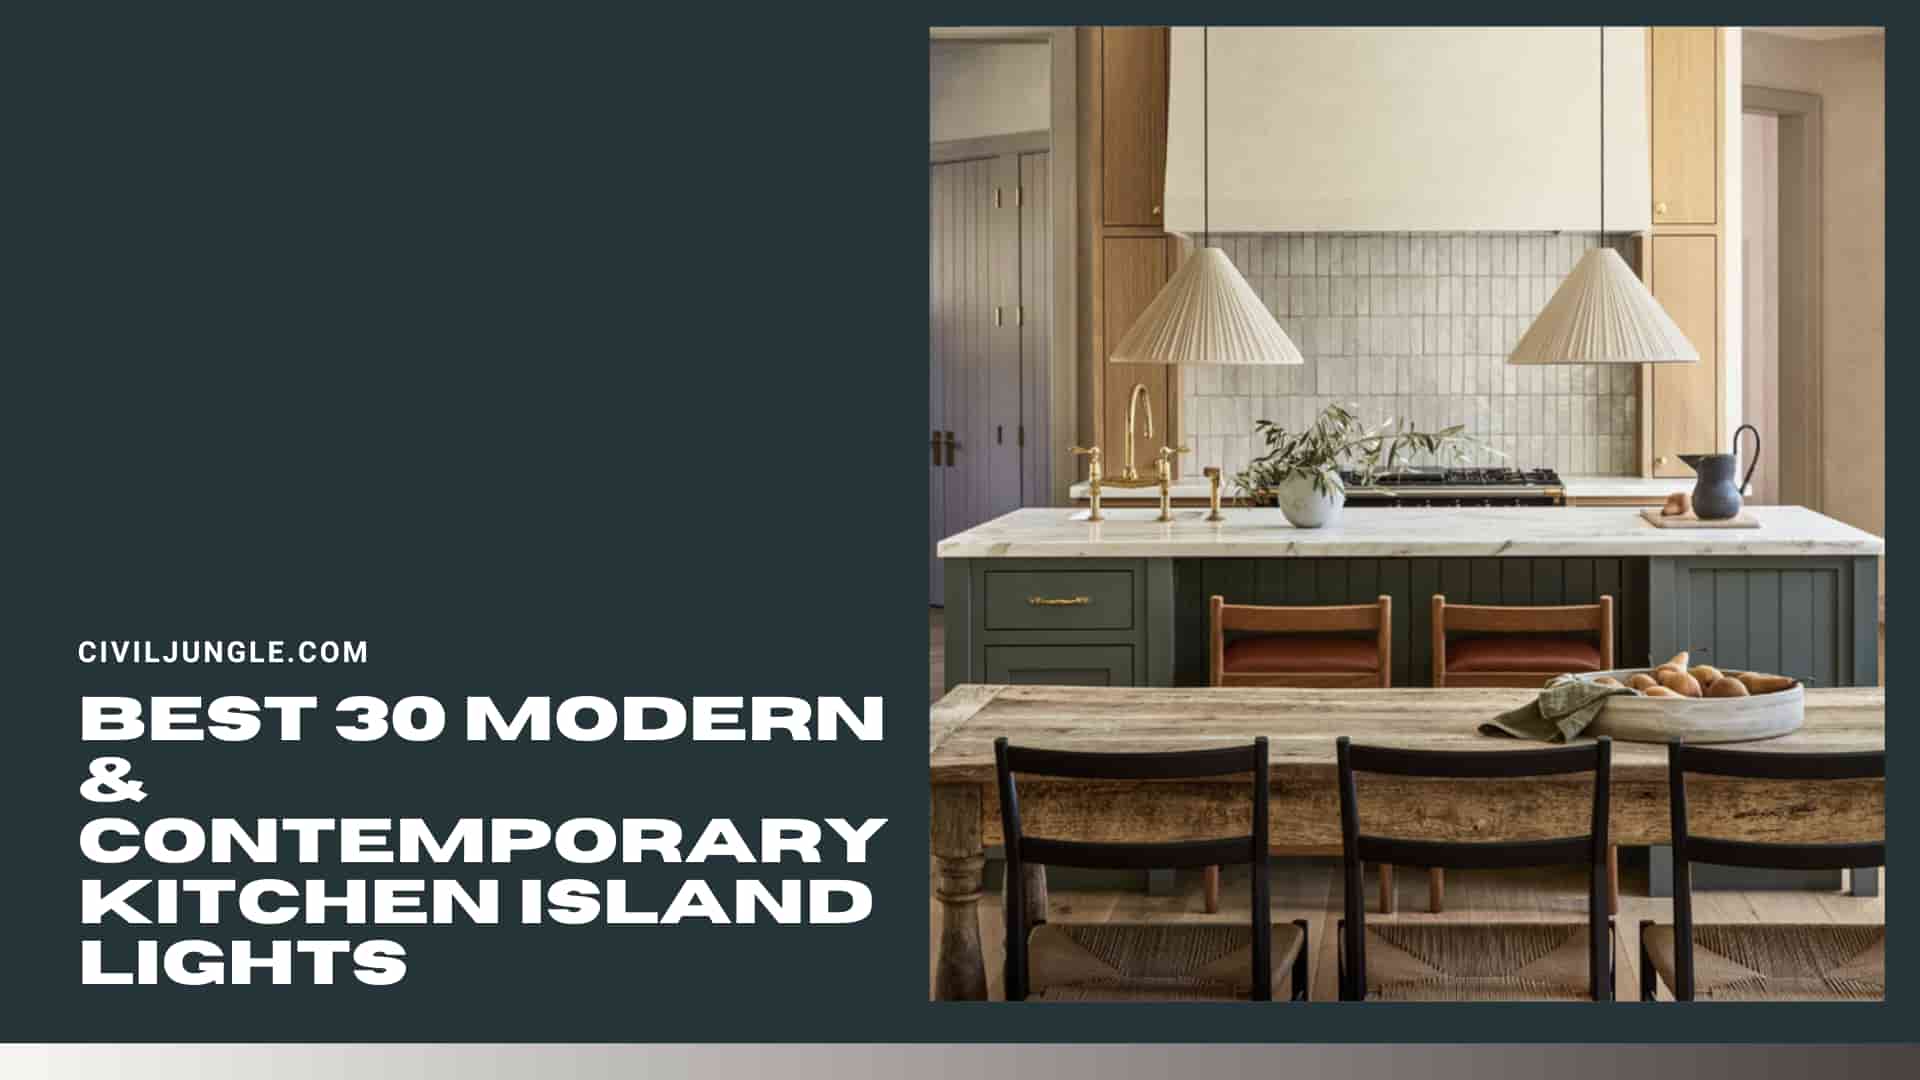 Best 30 Modern & Contemporary Kitchen Island Lights